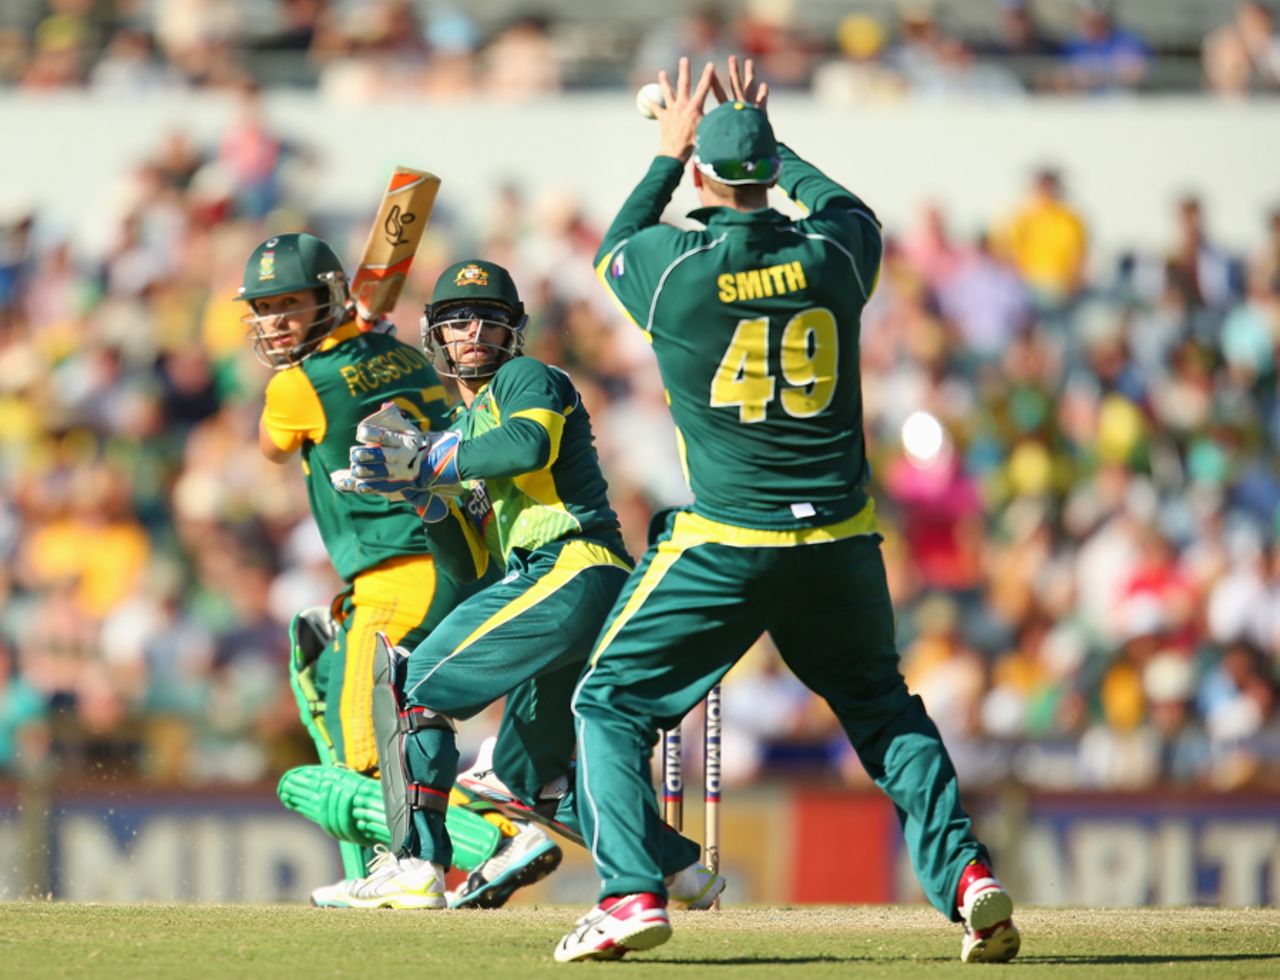 Steven Smith catches Rilee Rossouw at slip, Australia v South Africa, 2nd ODI, Perth, November 16, 2014